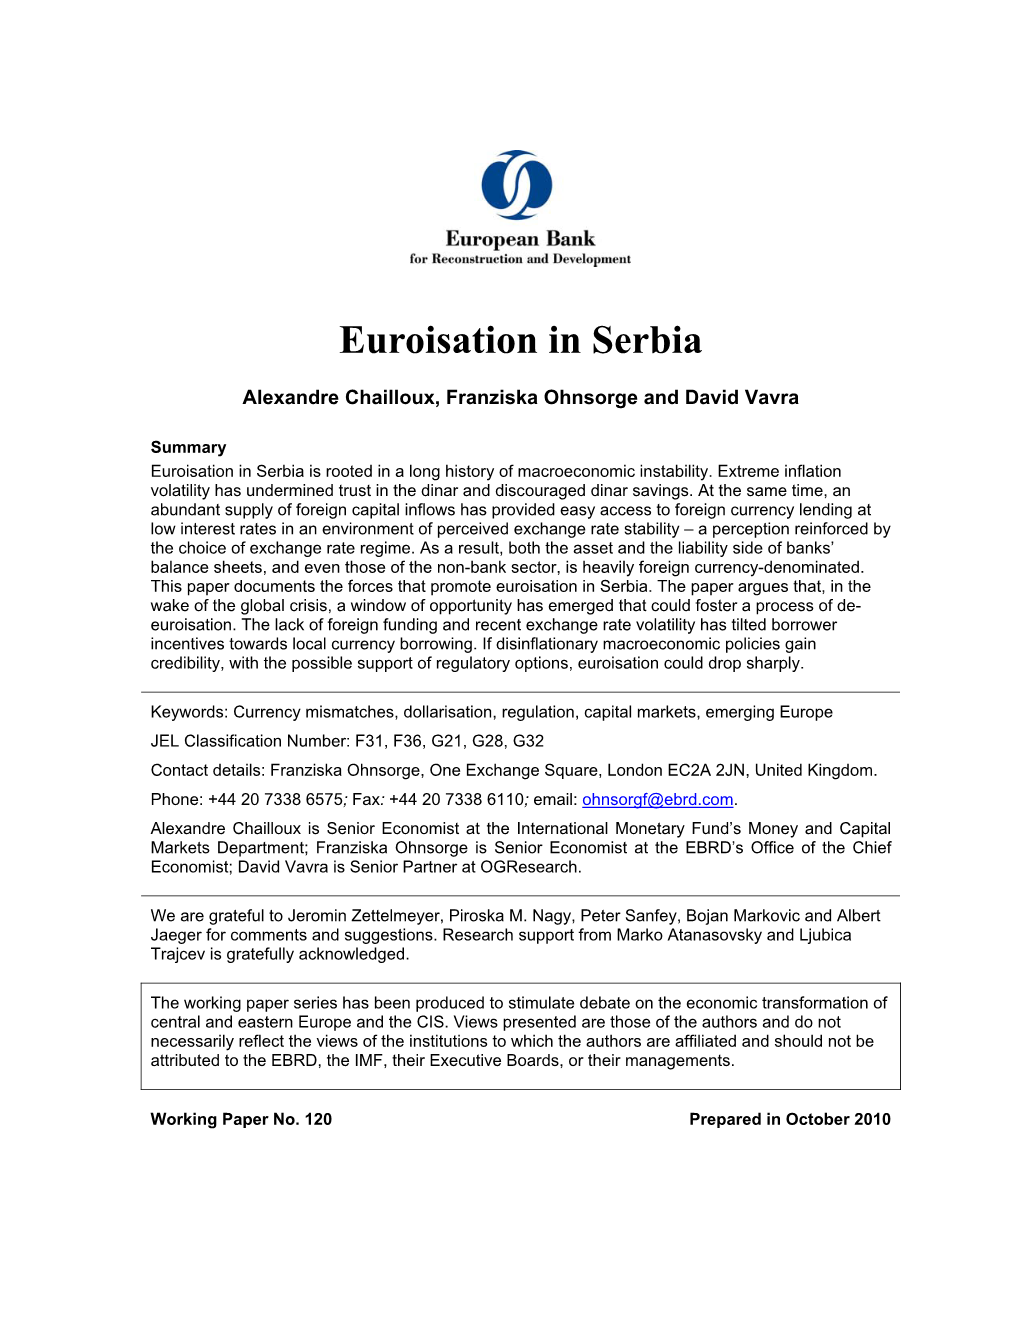 Euroisation in Serbia